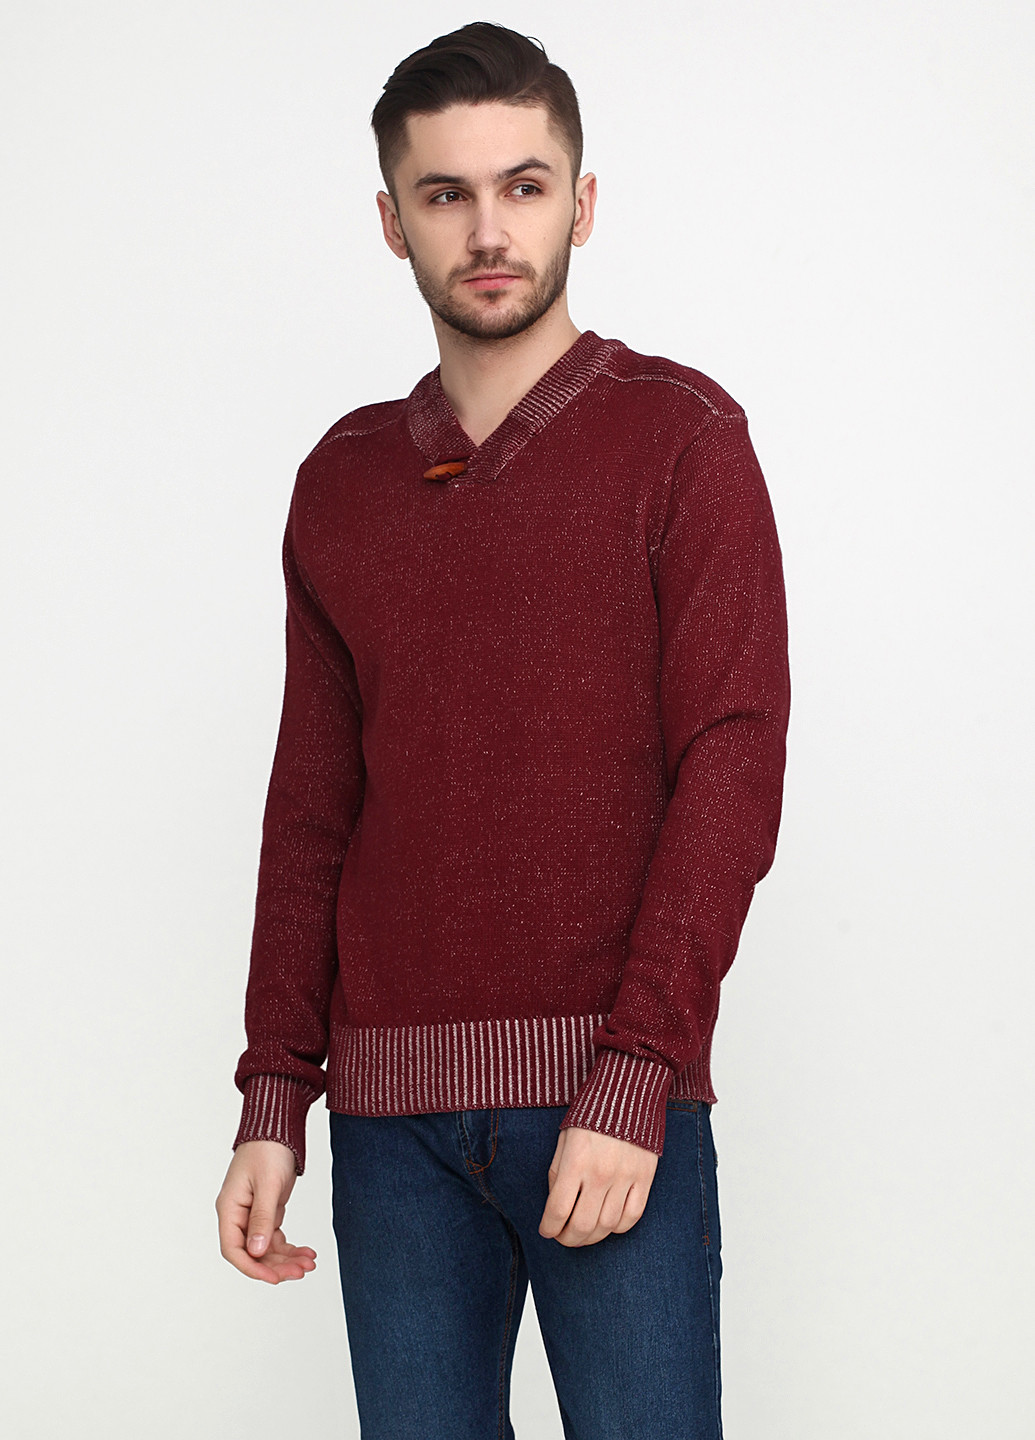 Бордовый демисезонный пуловер пуловер 98-86